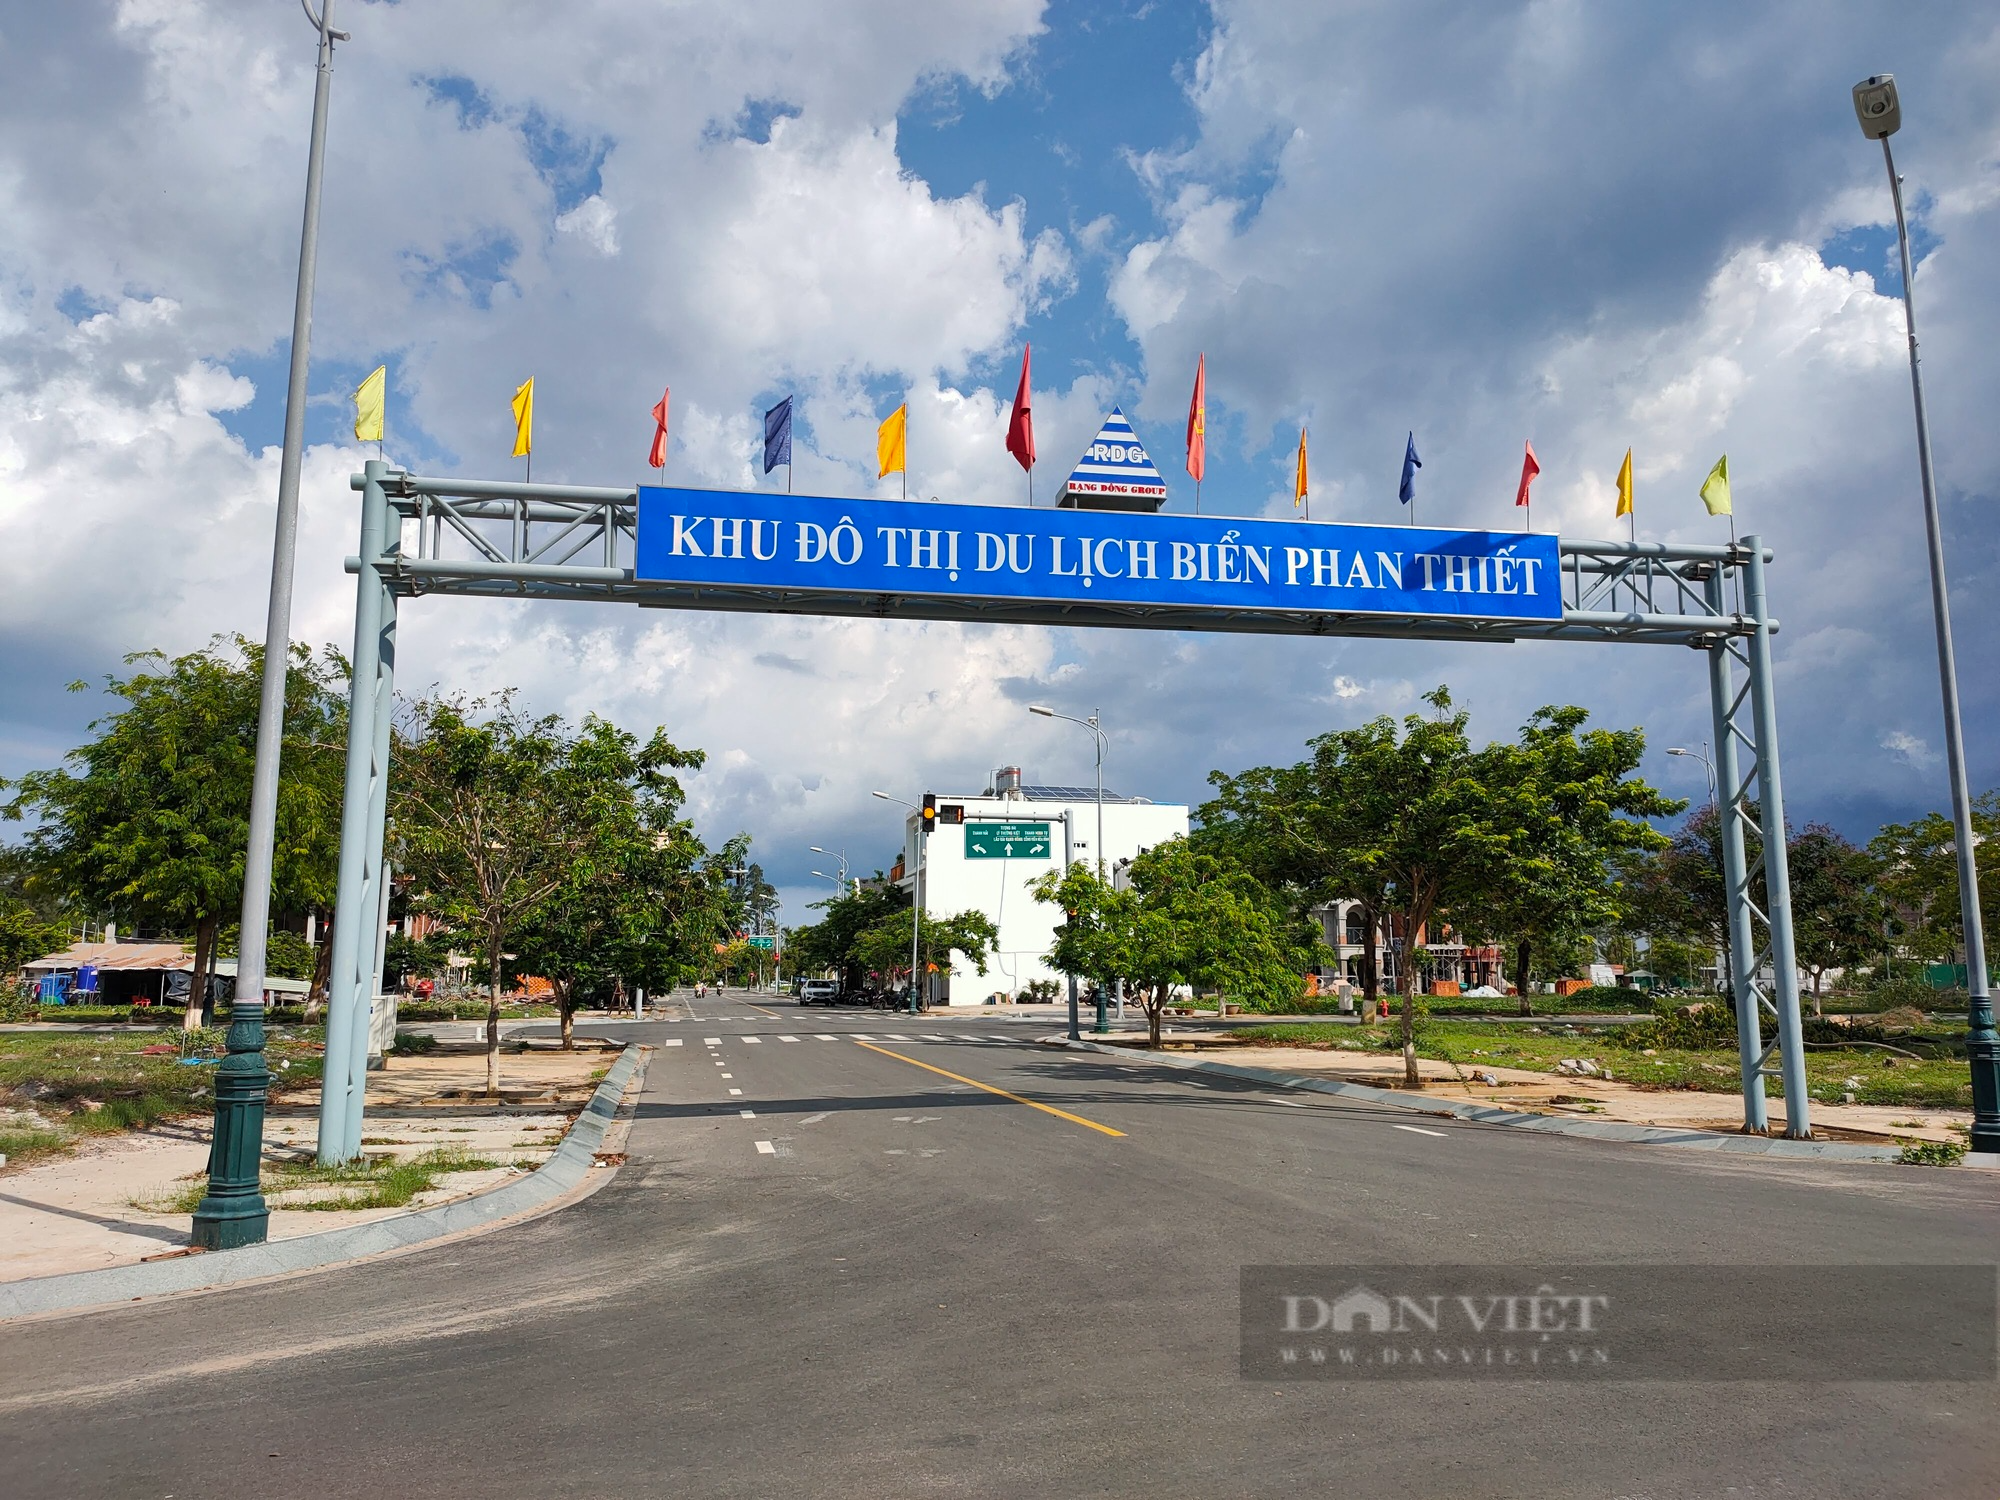 Cận cảnh dự án Khu đô thị du lịch biển Phan Thiết (Bình Thuận) vừa bị khởi tố - Ảnh 1.